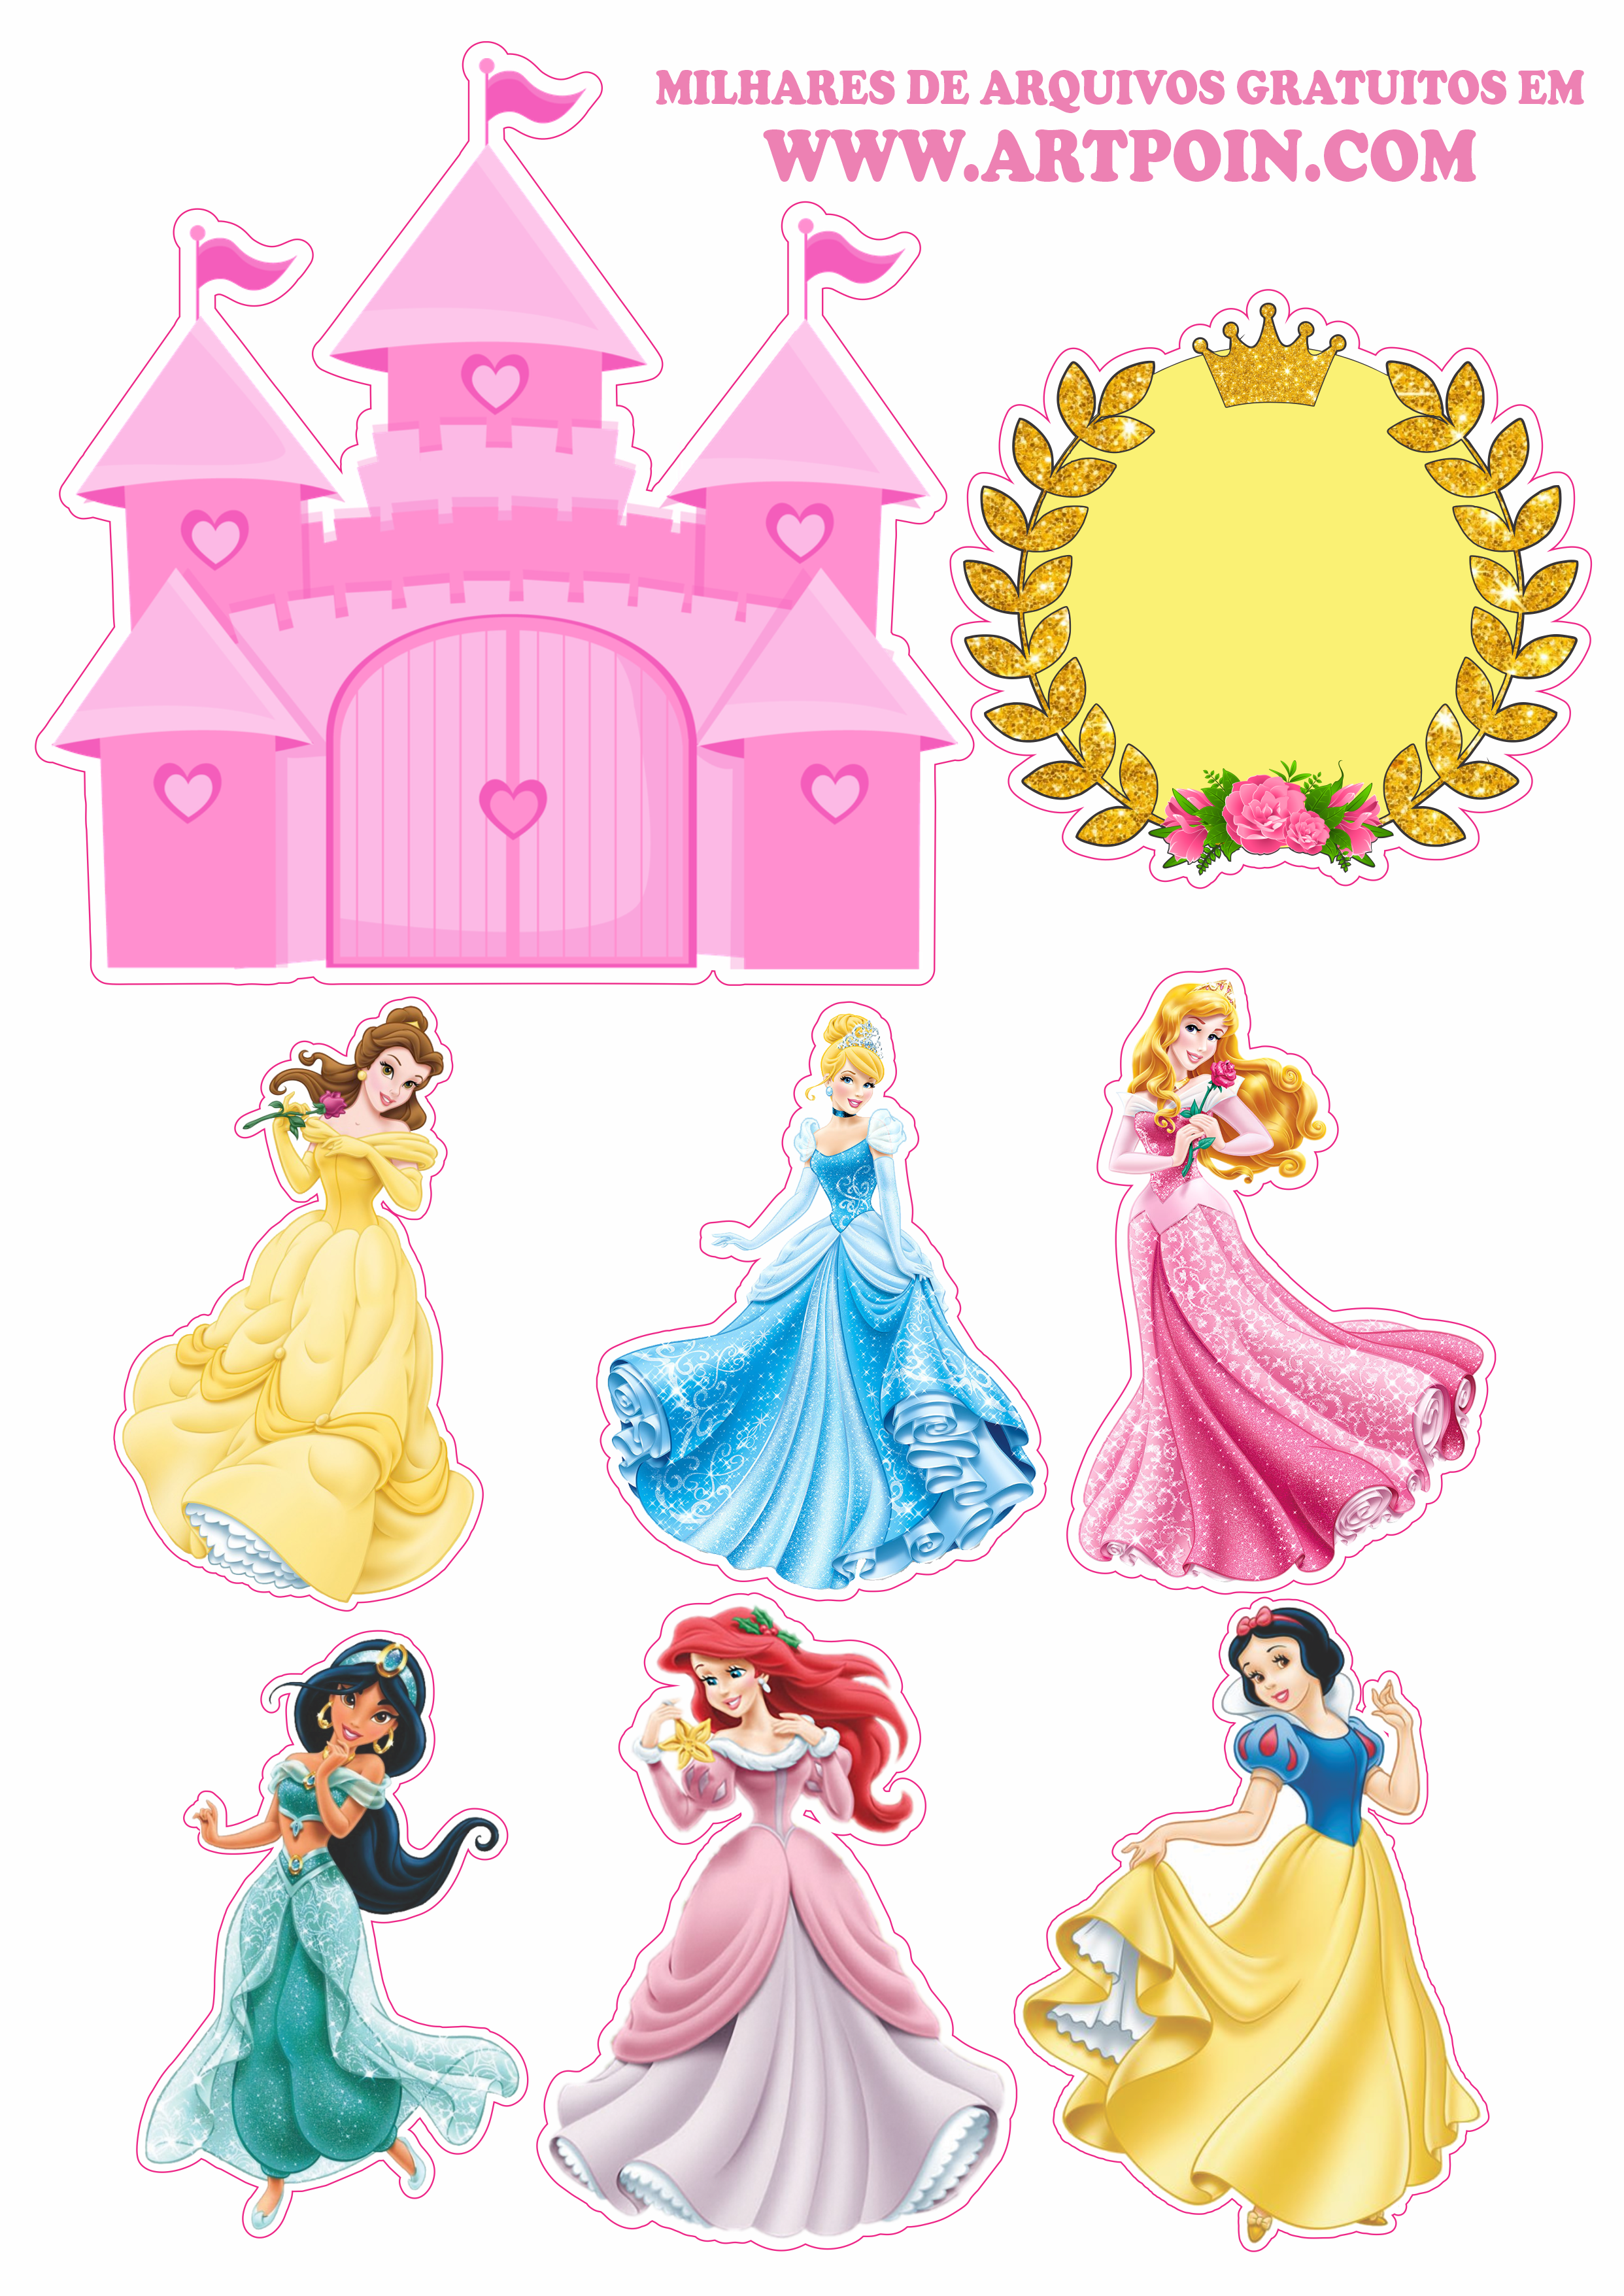 Topo de bolo para imprimir princesas disney animação infantil festa de  aniversário rosa parabéns castelo coroa e estrelas png